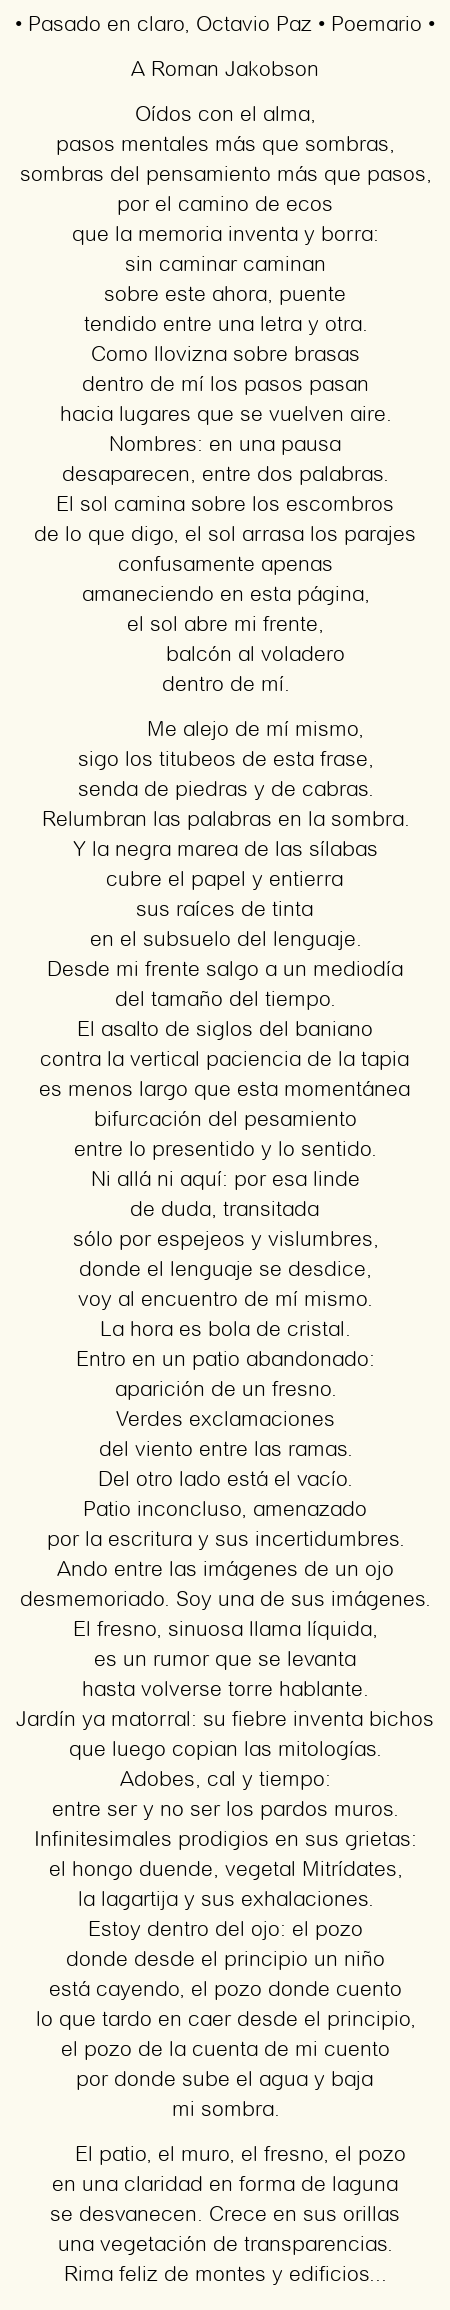 Imagen con el poema Pasado en claro, por Octavio Paz